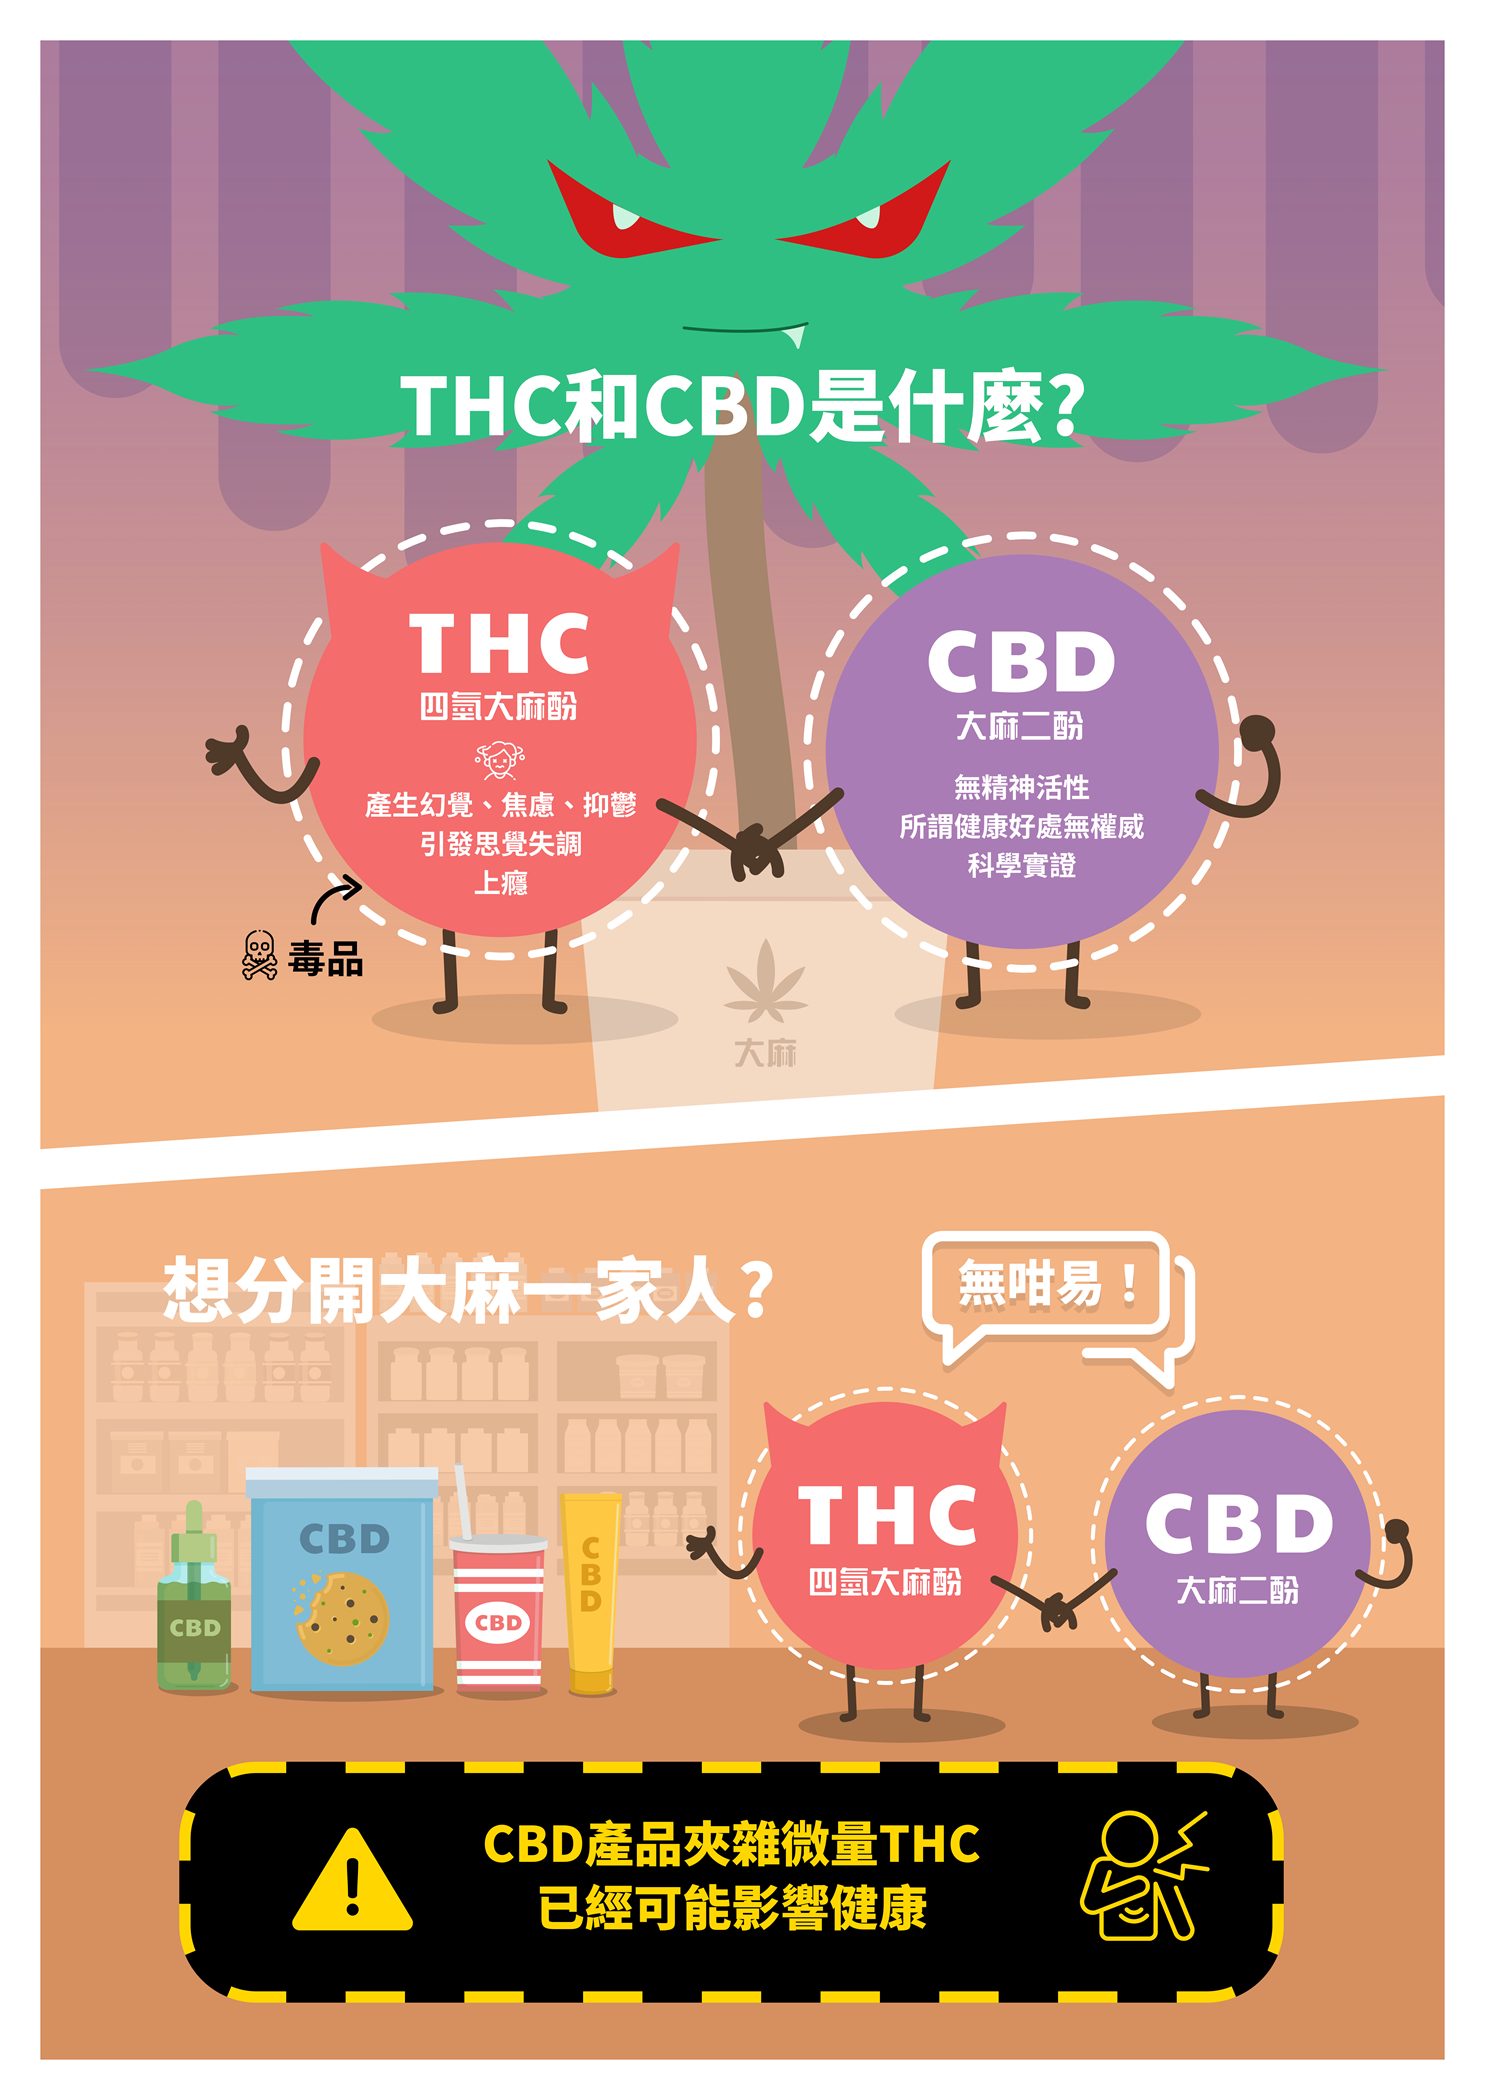 THC 和 CBD 是什麼?